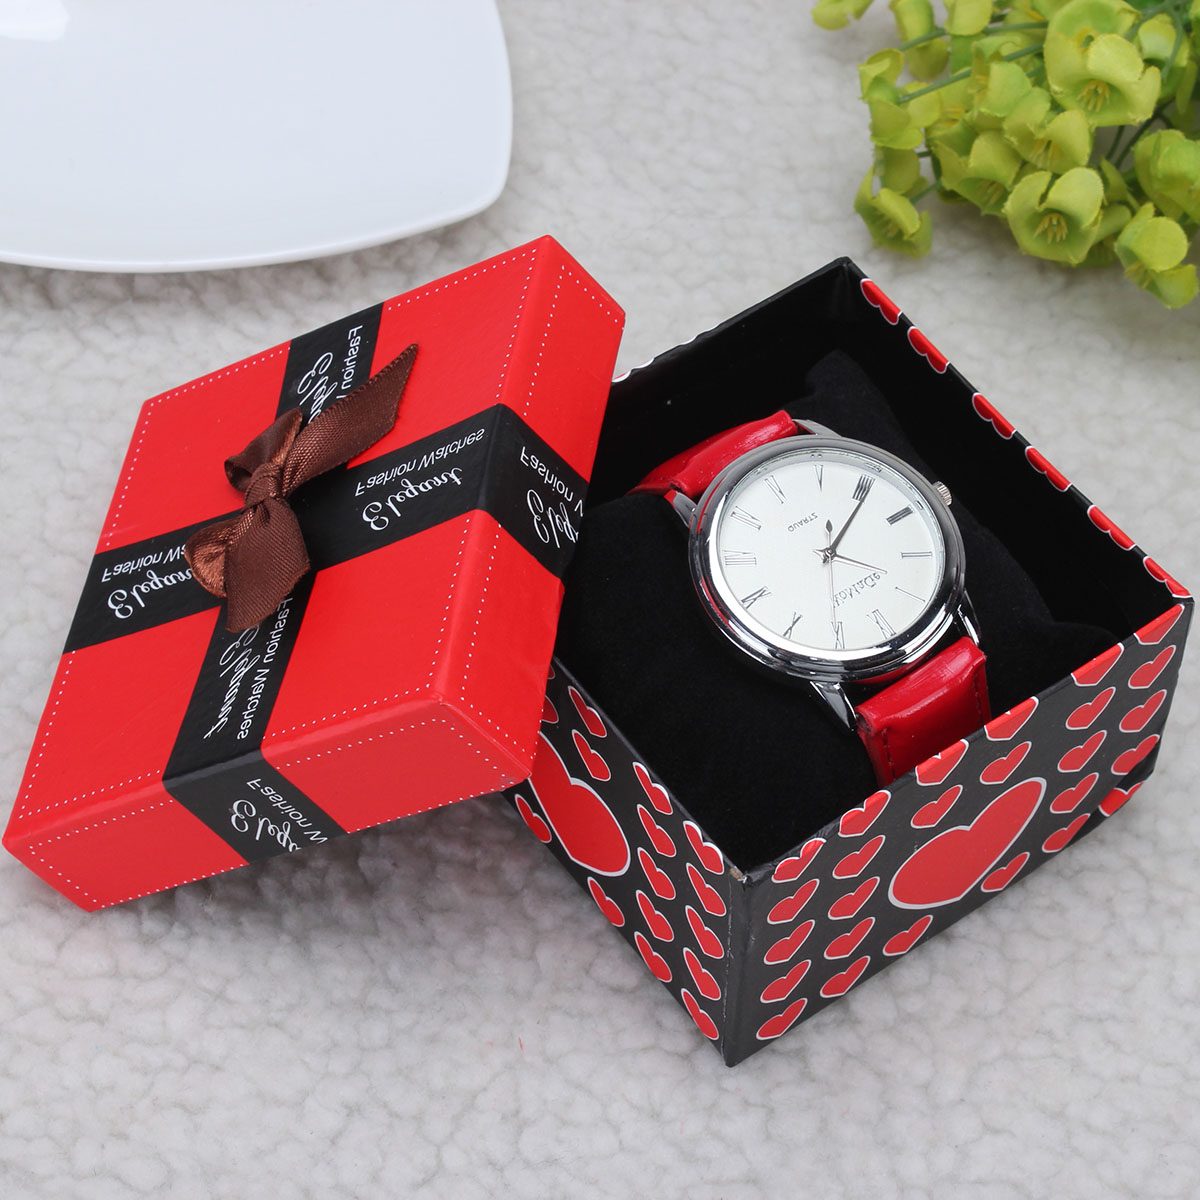 Часы в магазине в коробке. Часы в подарок. Часы в коробочке. Часы в подарочной упаковке. Для часов подарок.